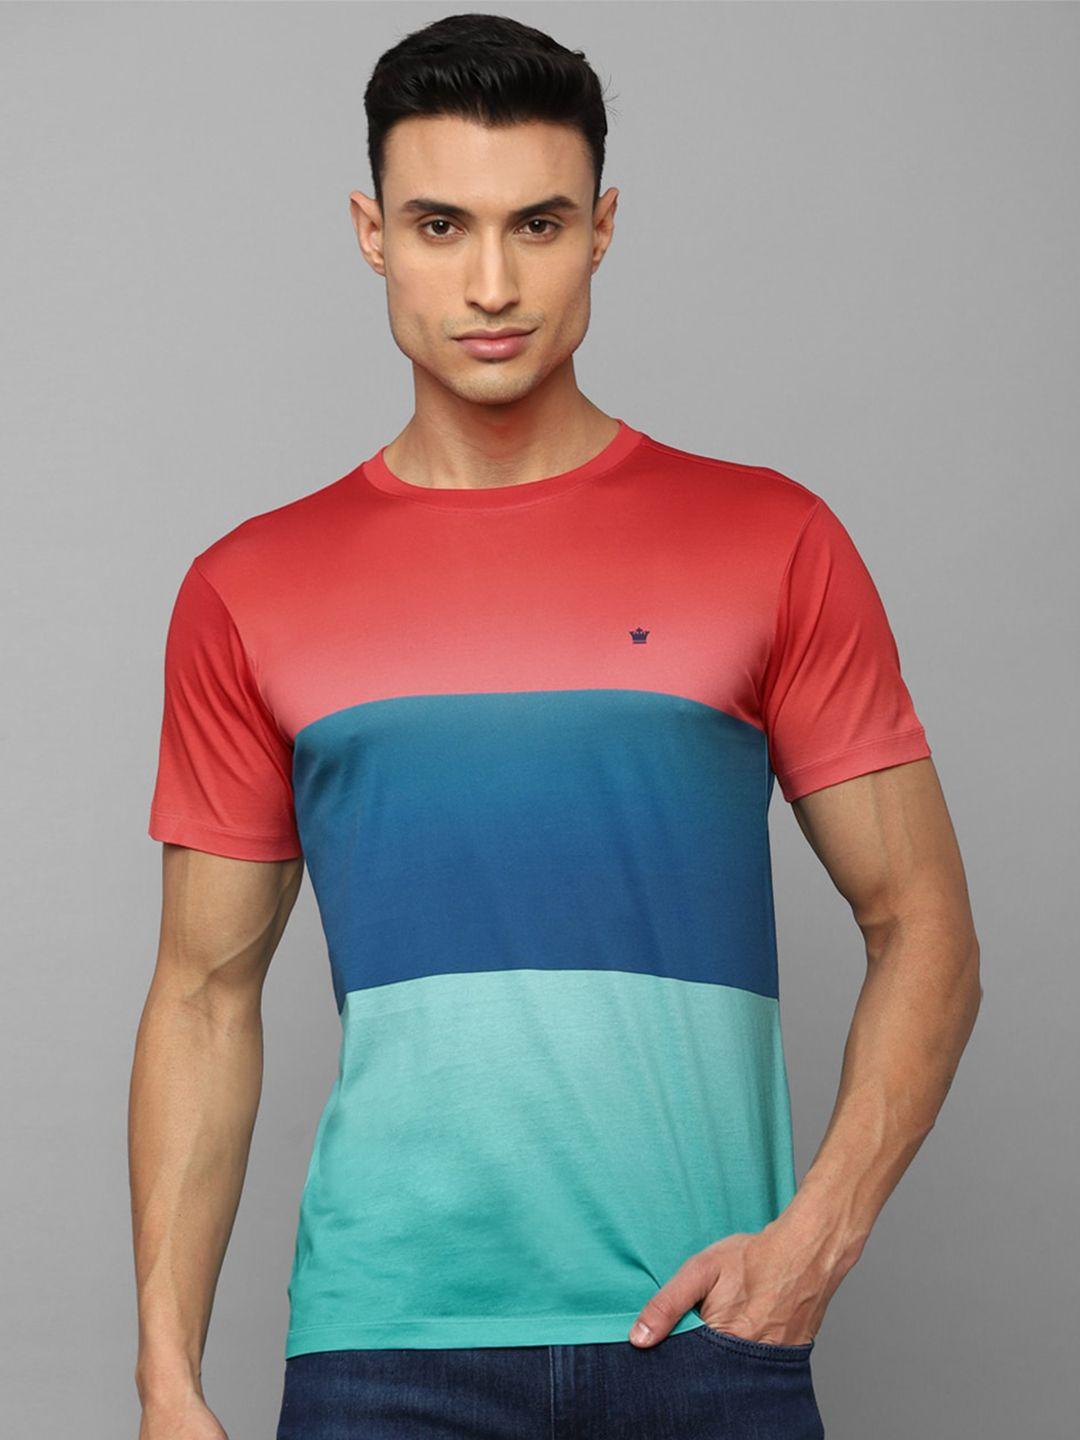 louis philippe sport colourblocked slim fit pure cotton t-shirt